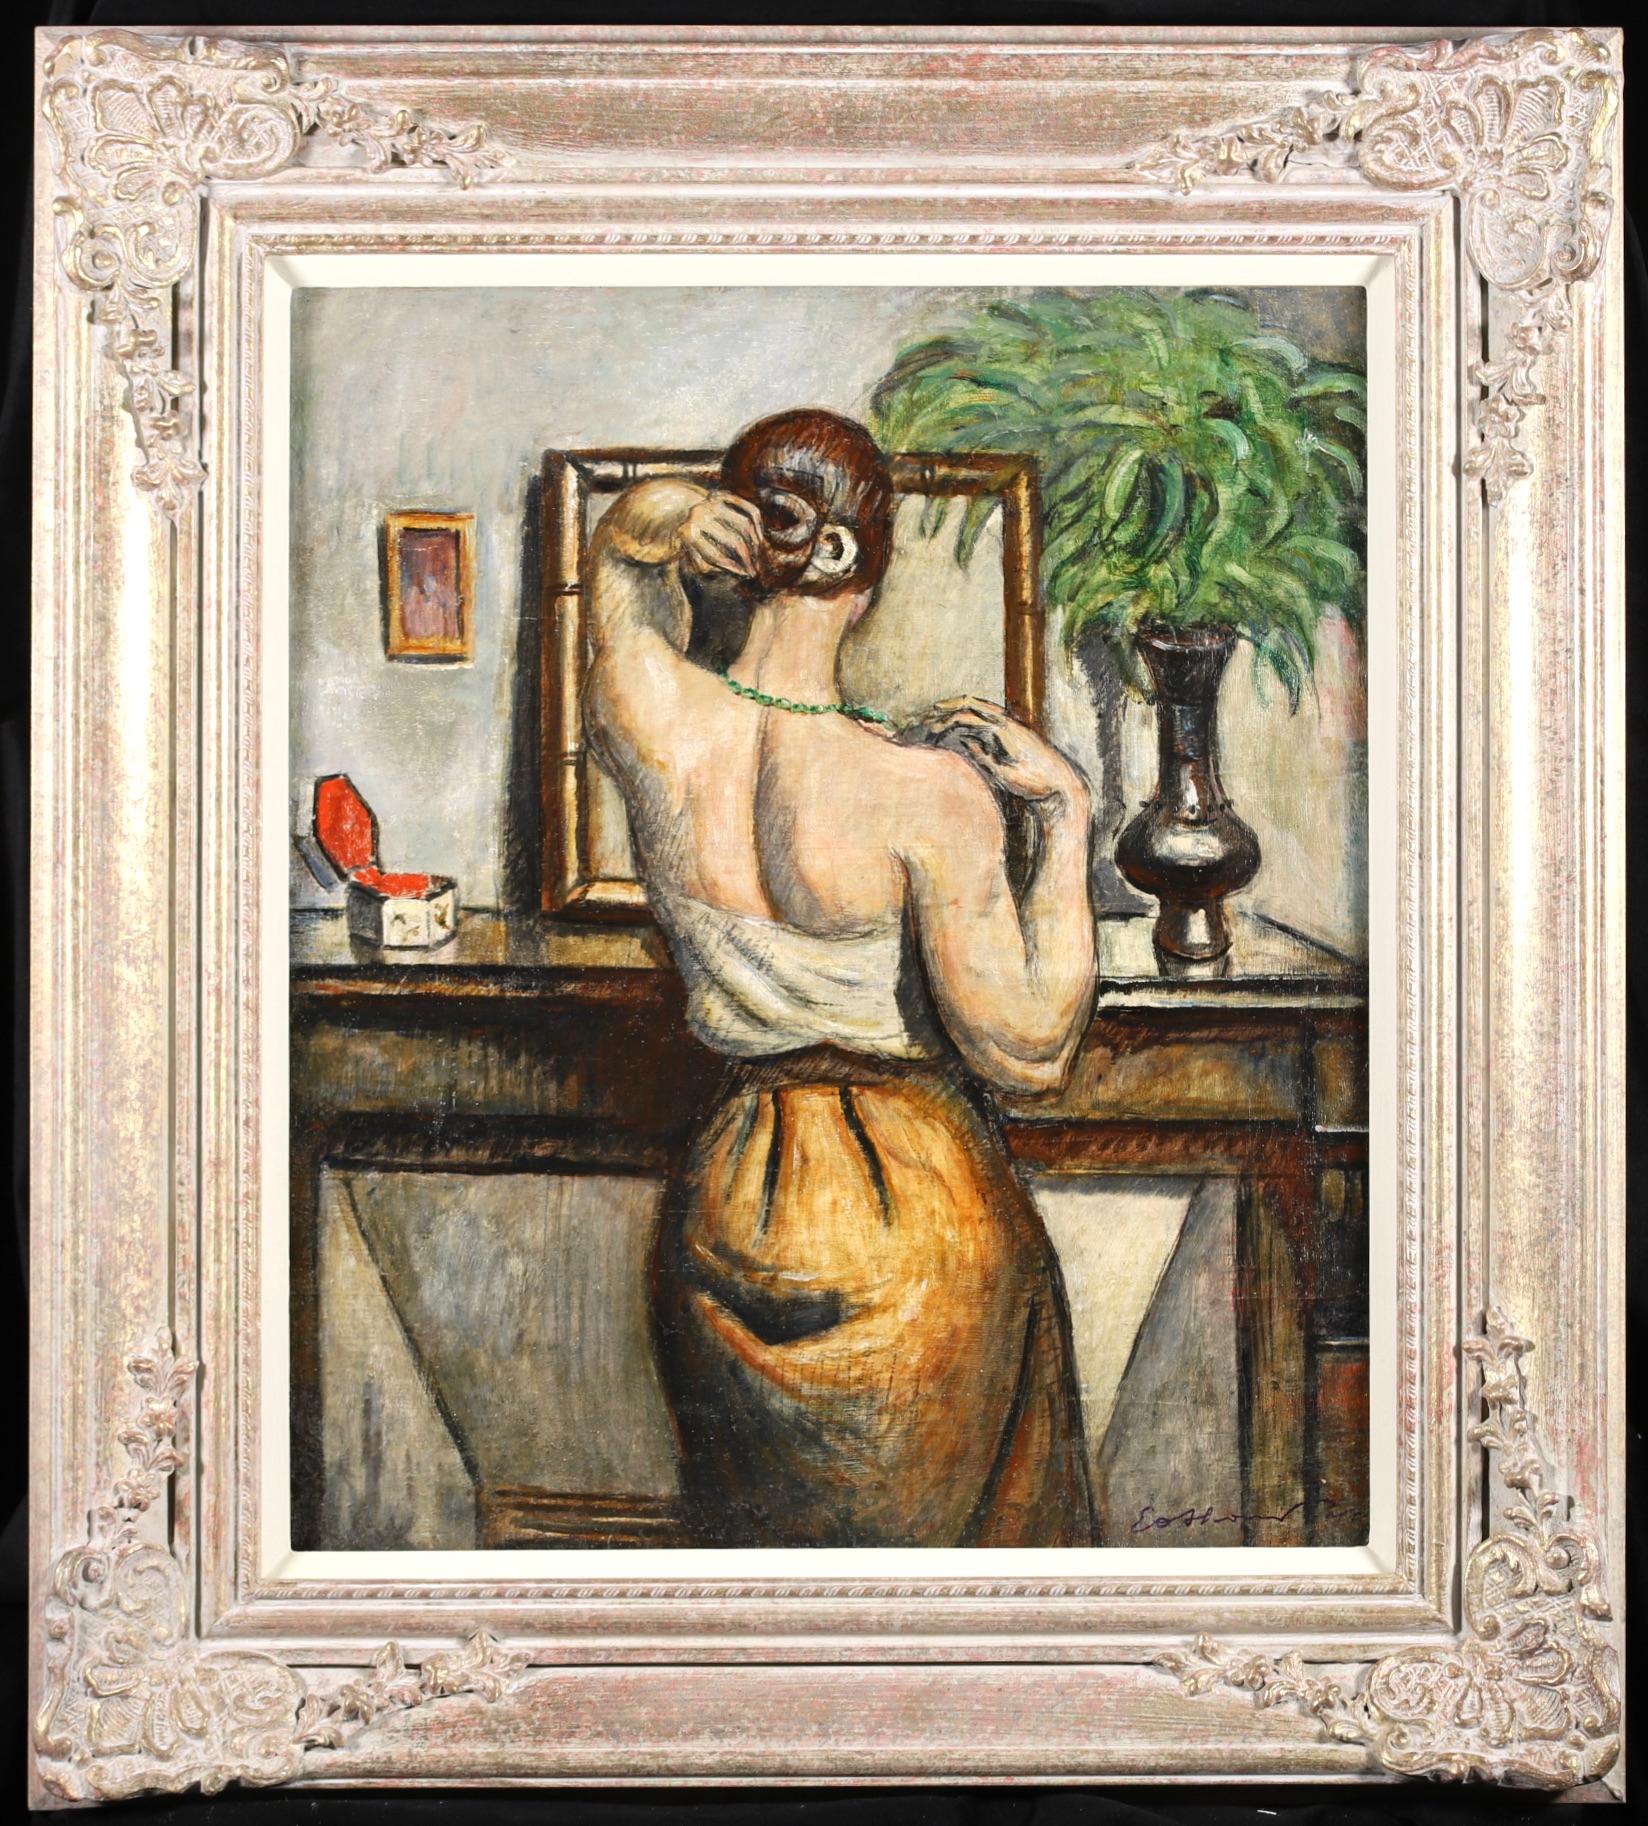 Achille-Émile Othon Friesz Interior Painting - Nu dans un miroir - Post Impressionist Figurative Oil Painting by Othon Friesz